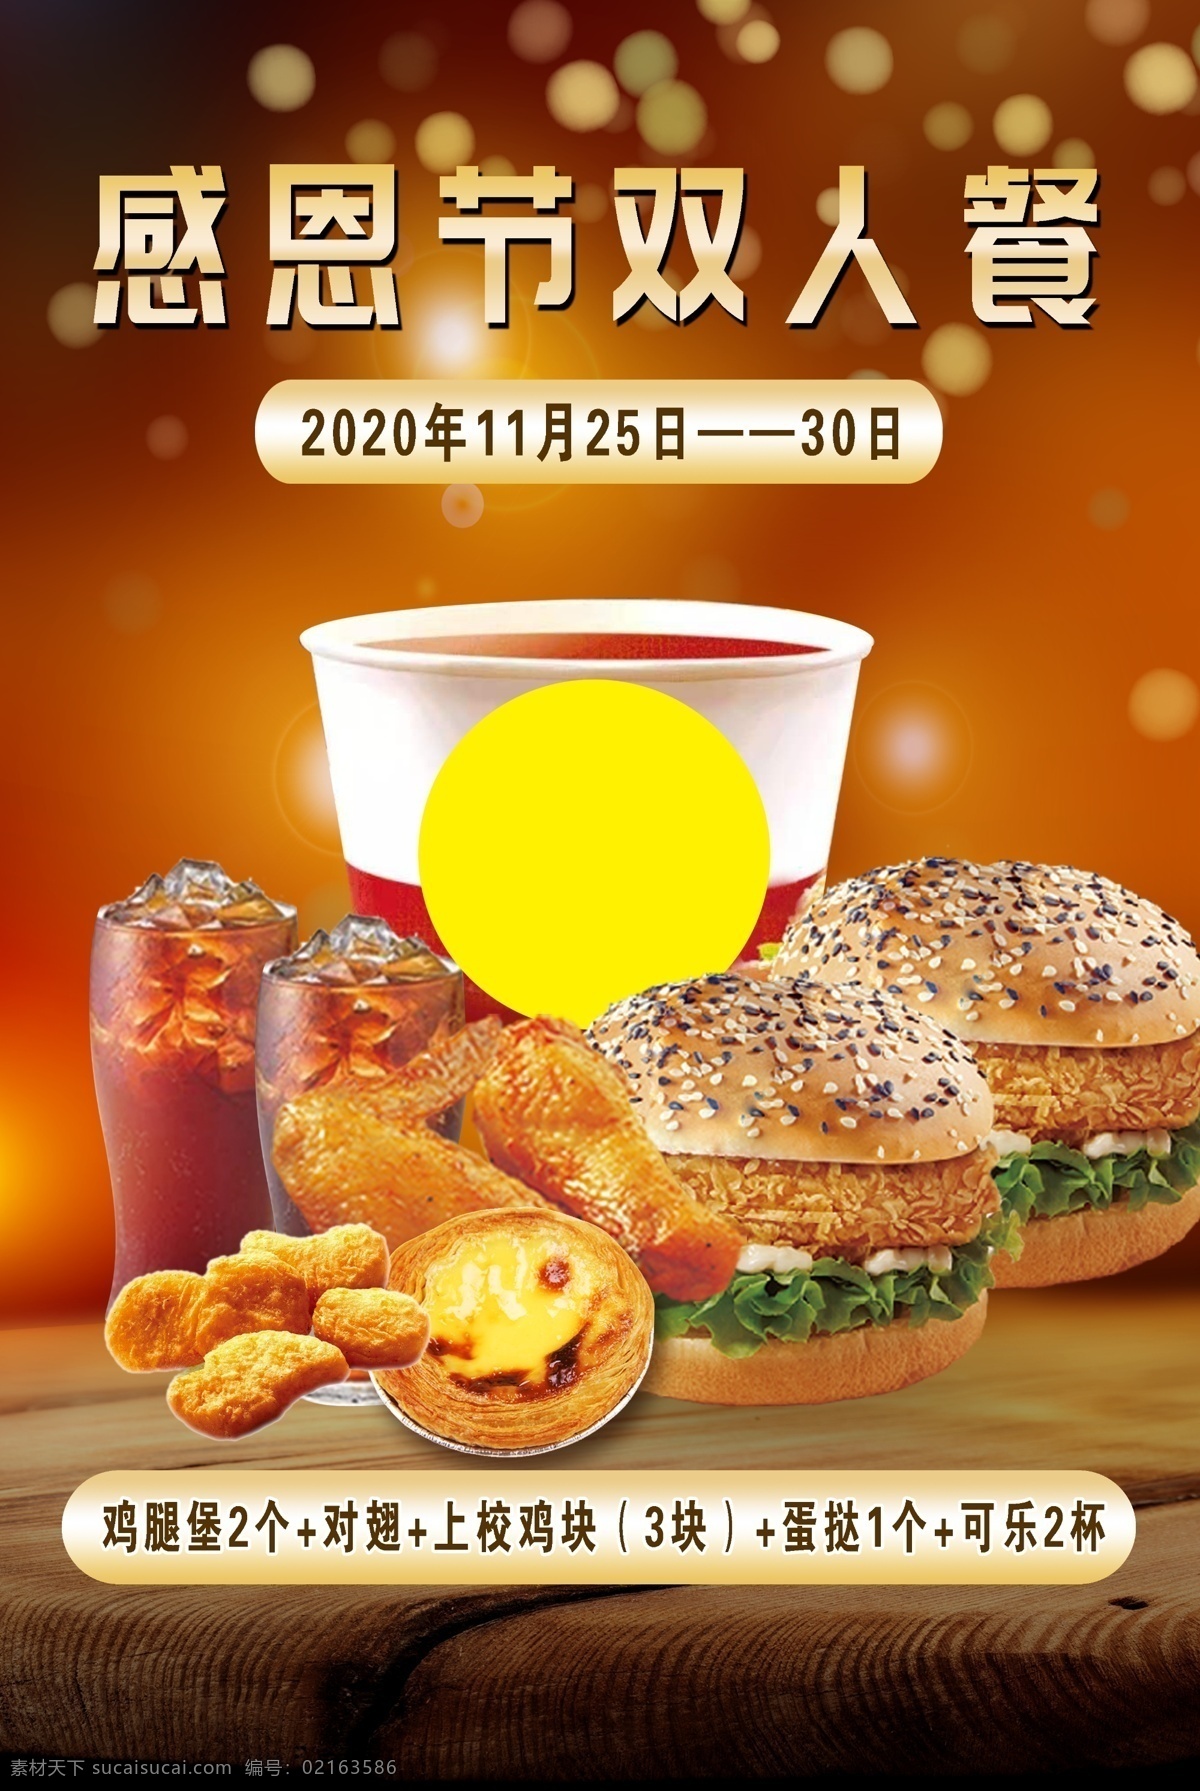 汉堡海报图片 双人餐 汉堡 鸡翅 可乐 蛋挞 分层